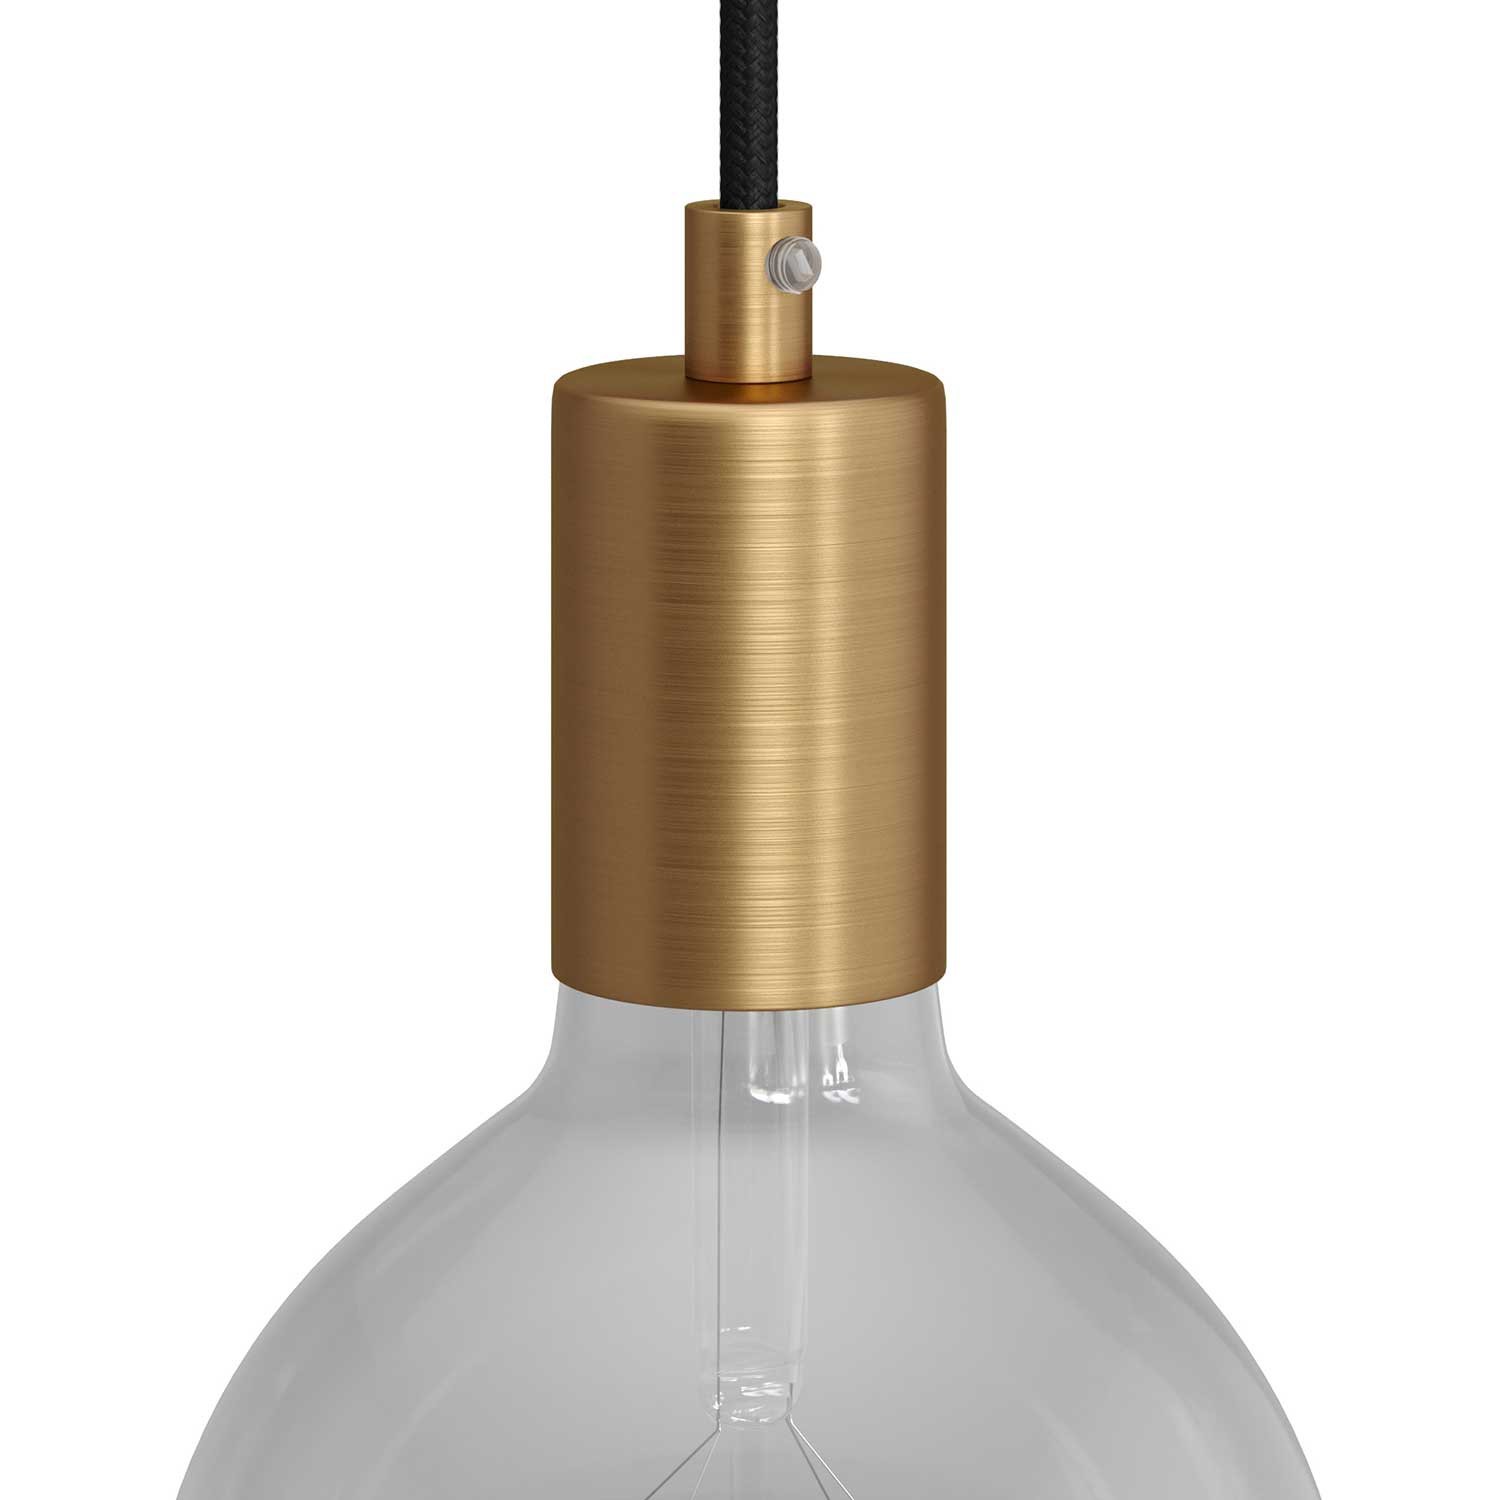 Zylindrisches E27-Lampenfassungs-Kit aus Metall